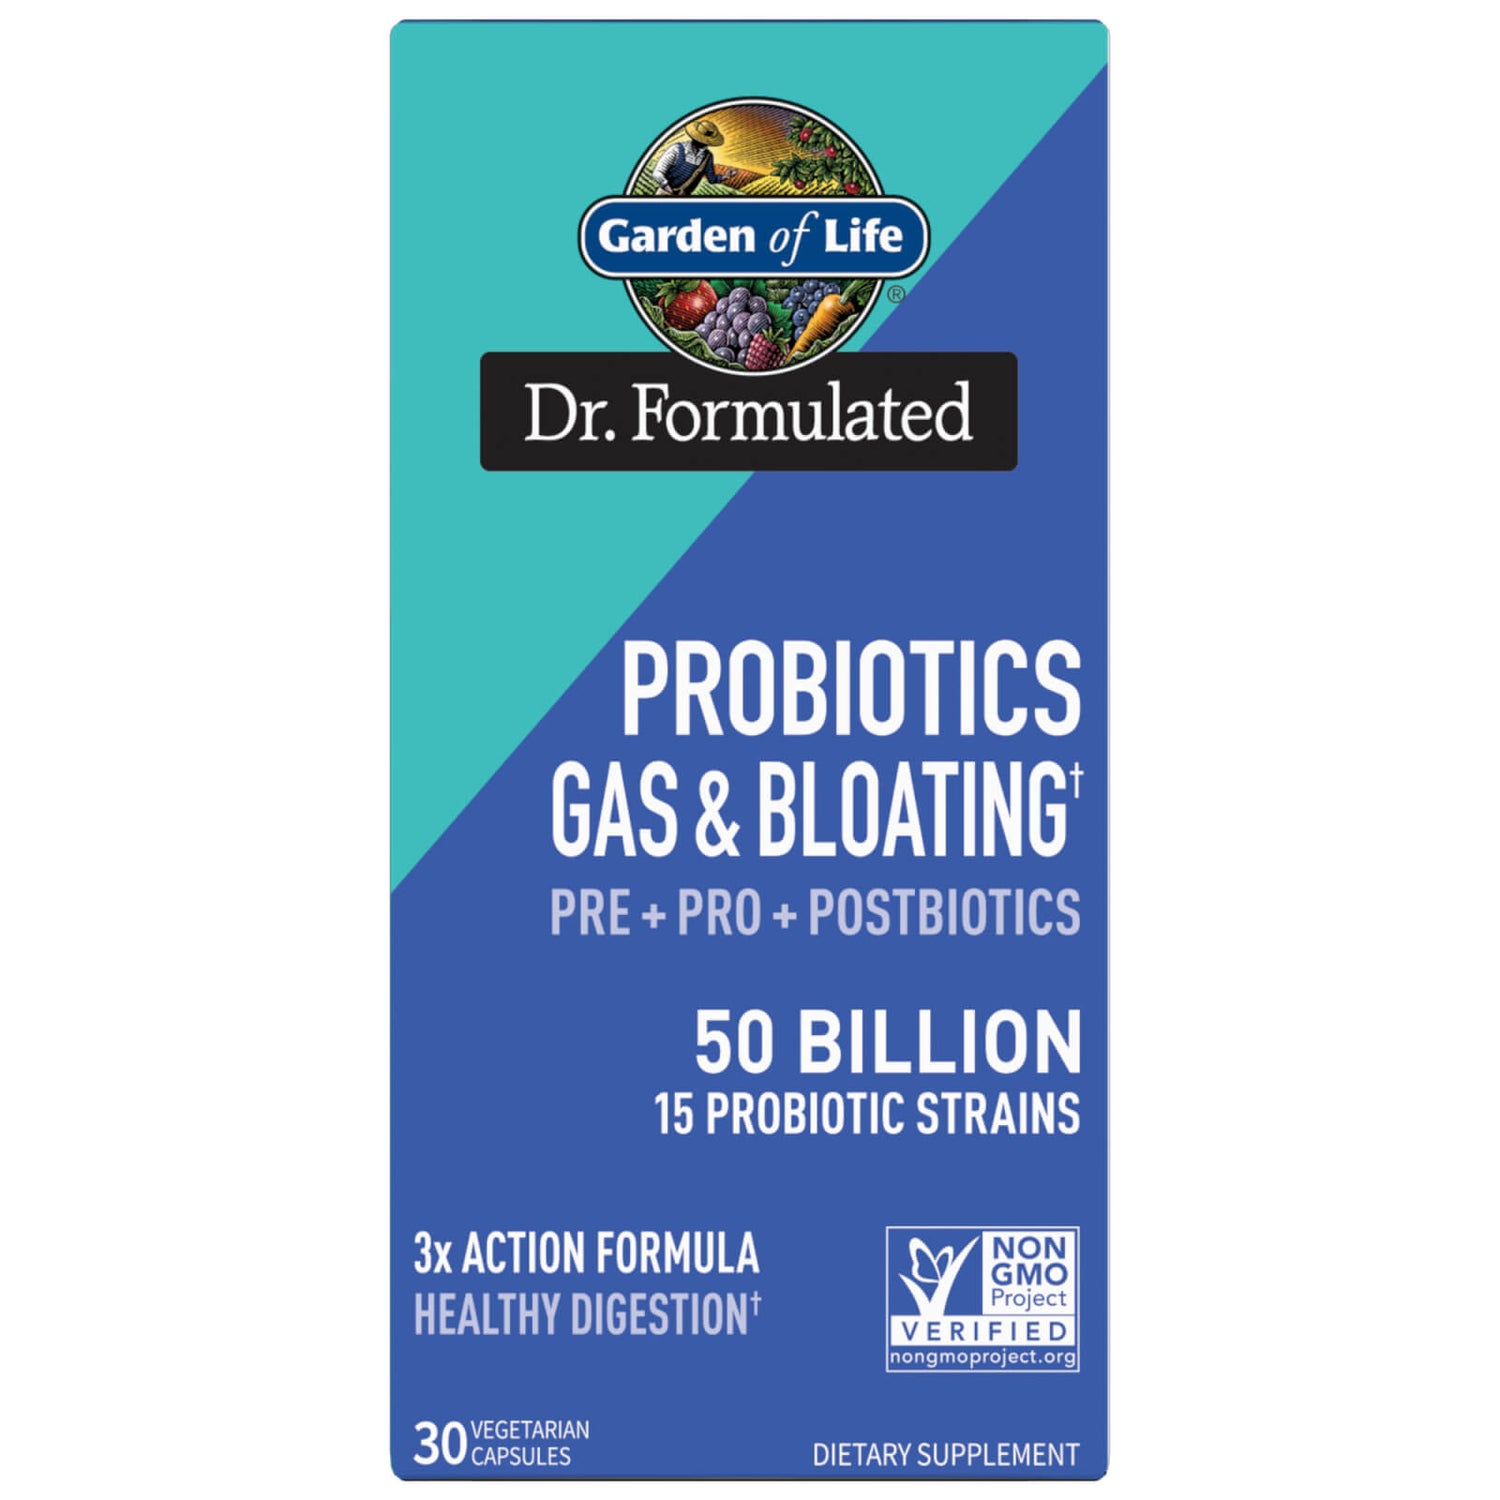 Probiotique anti-flatulences + anti-ballonnements Pre+Pro+Postbiotics 50B Dr. Formulated